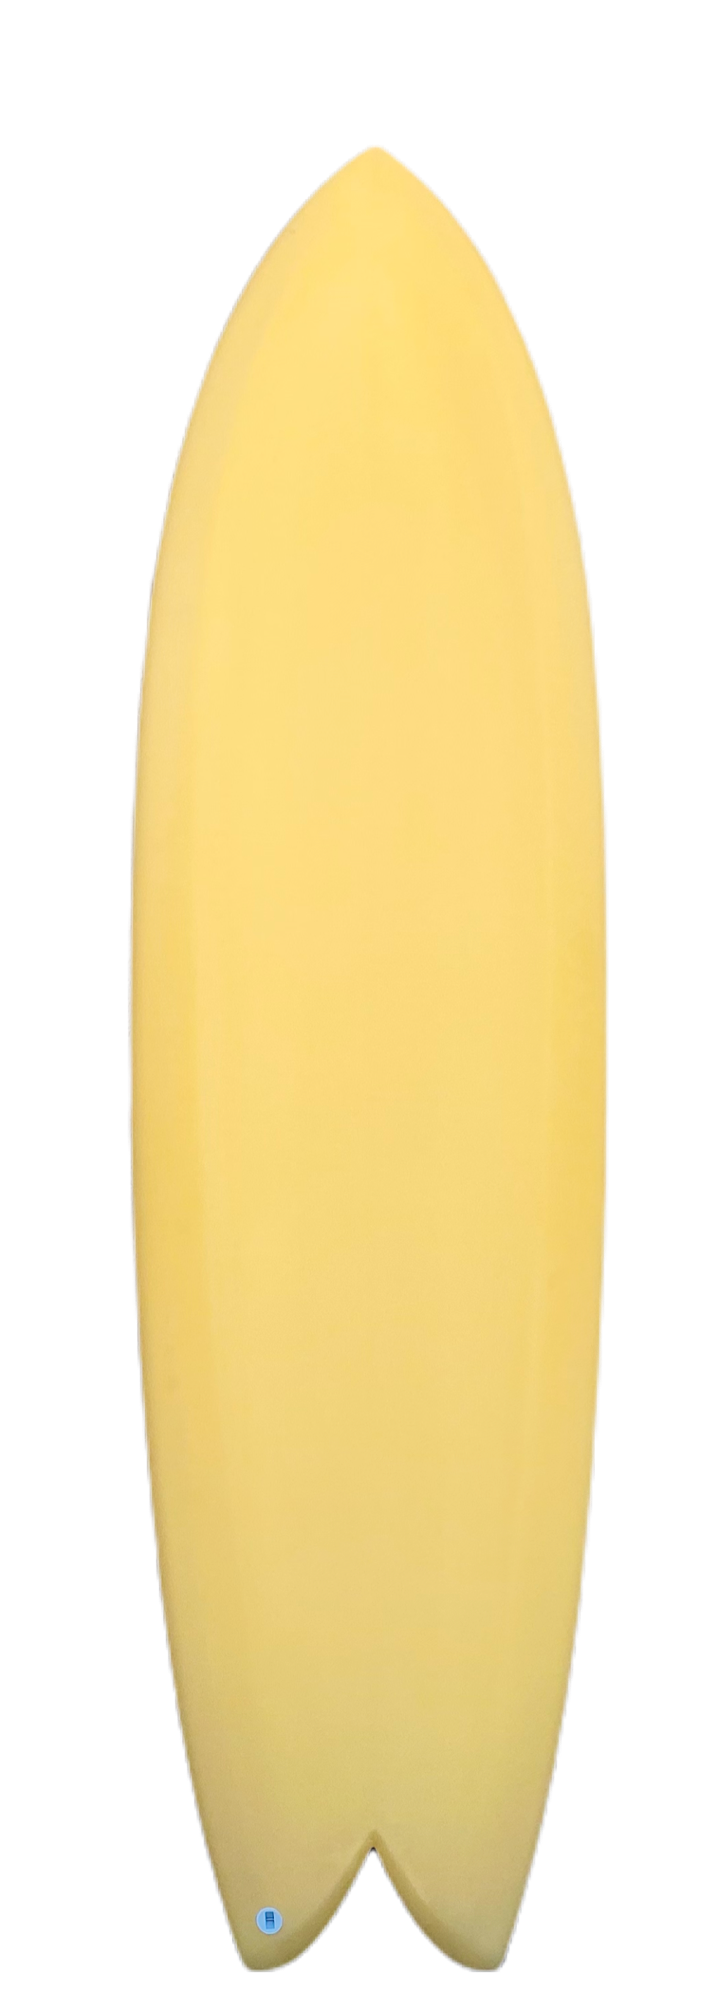 STPNK | Long Fish 6'10" Egg Shell Surfboard Top View - SurfBored